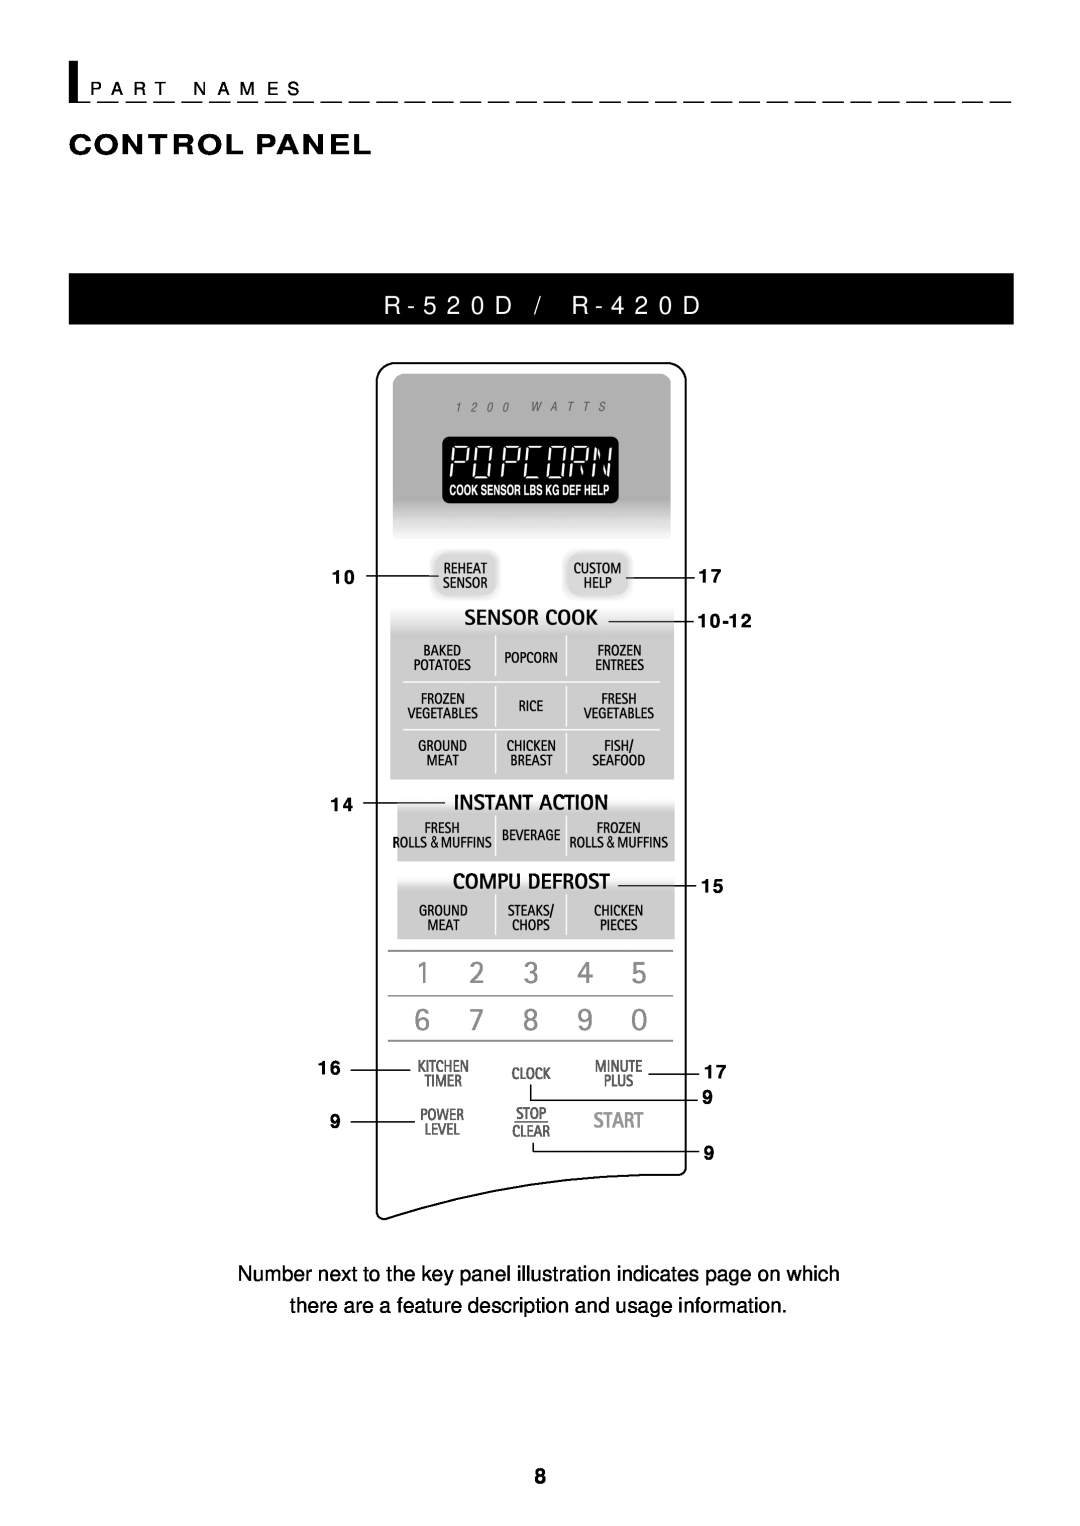 Sharp R-420D, R-520D operation manual R - 5 2 0 D / R - 4 2 0 D, P A R T N A M E S, Control Panel, 10-12 